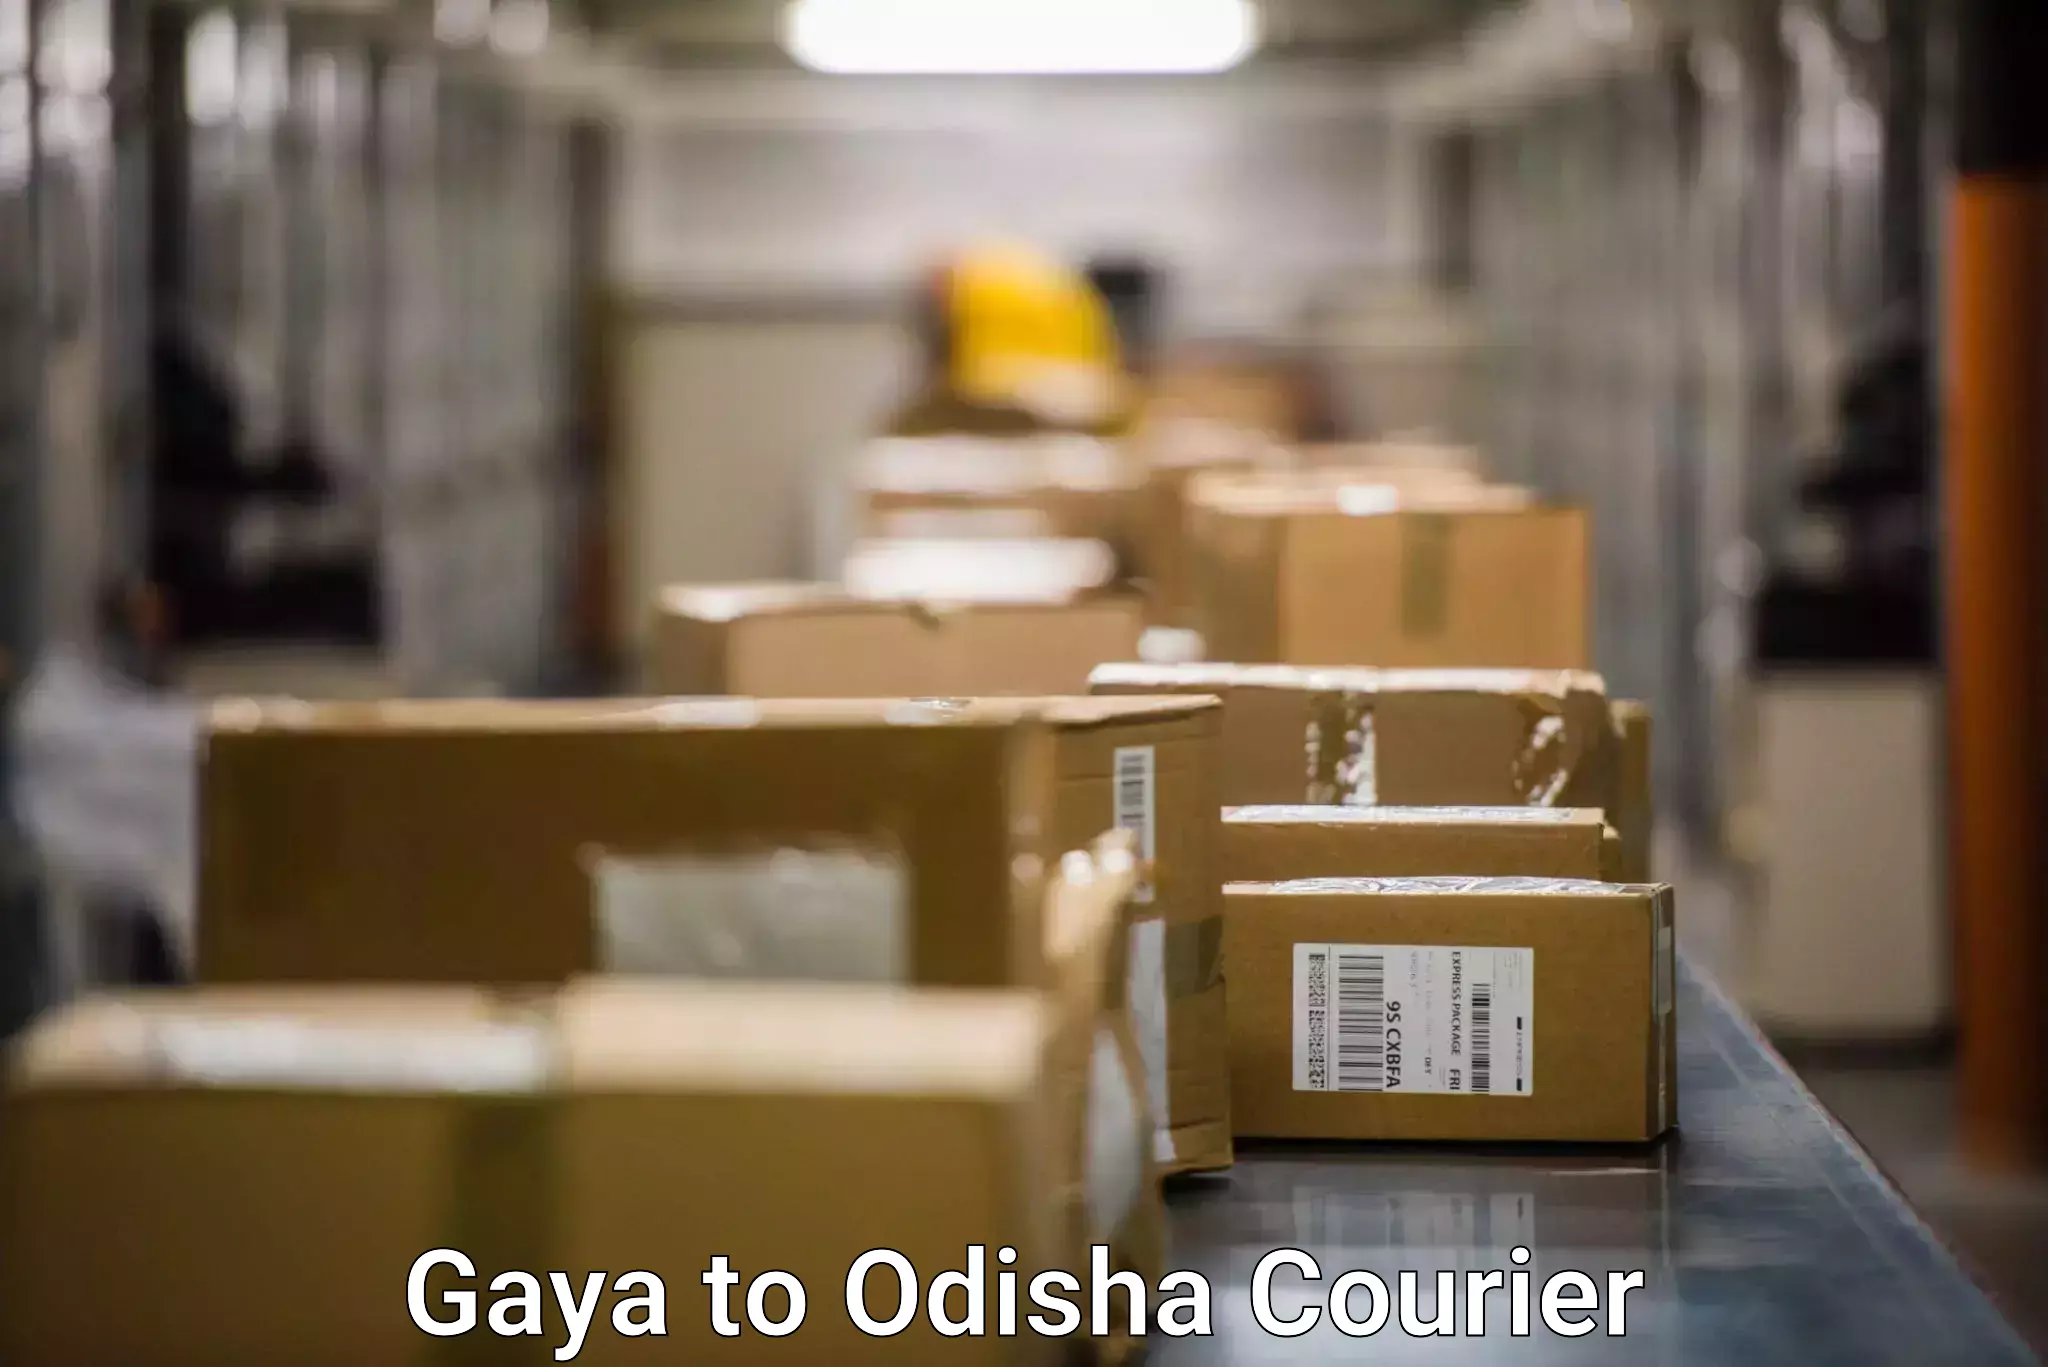 Modern delivery methods Gaya to Jajpur